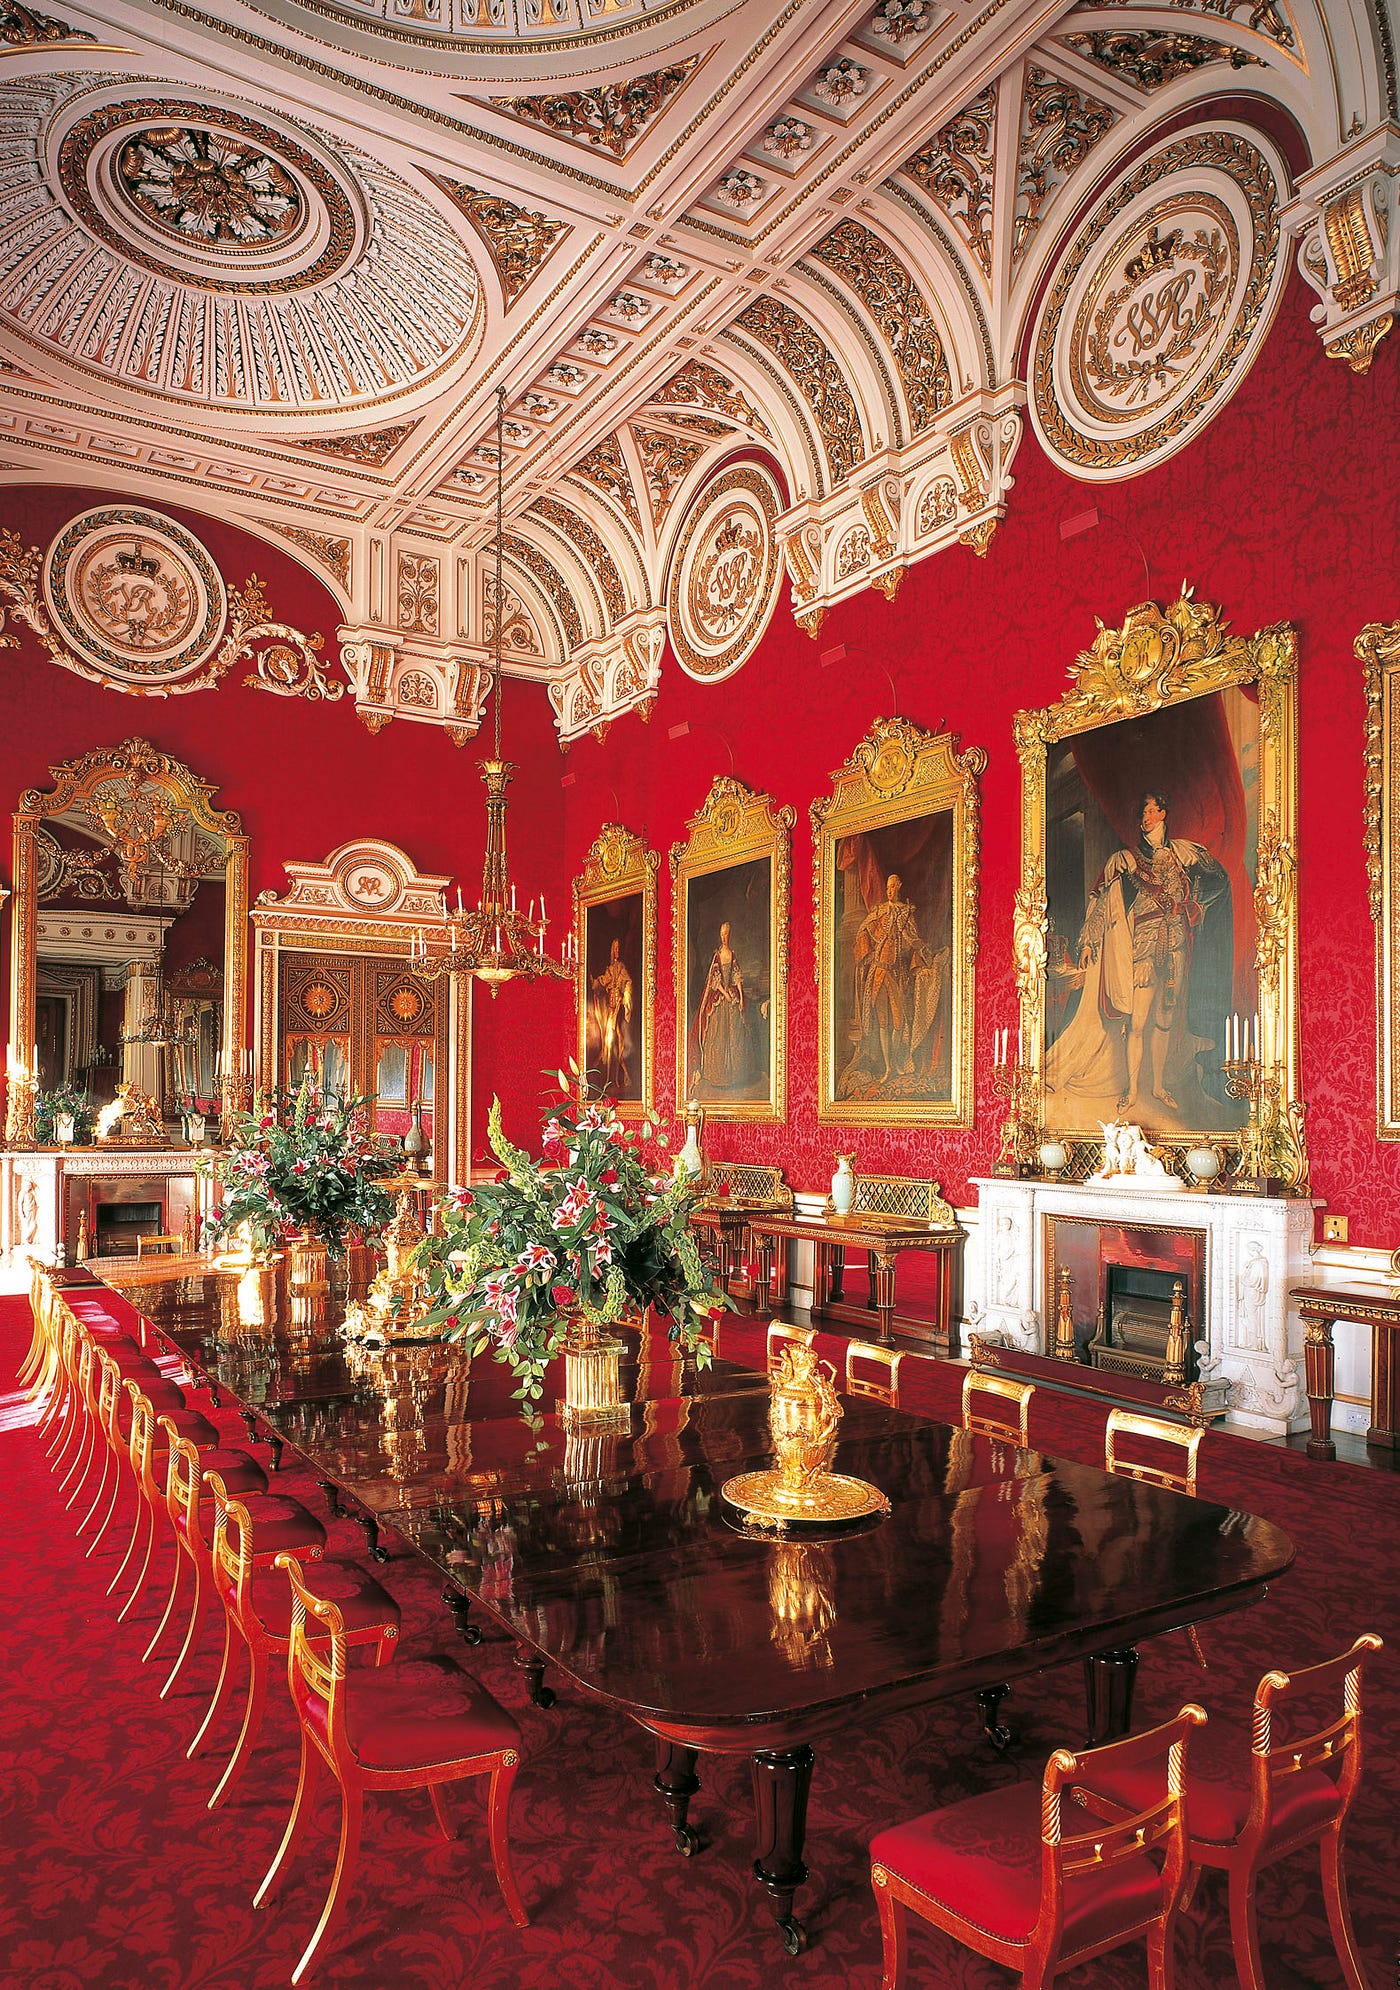 buckingham palace interior layout